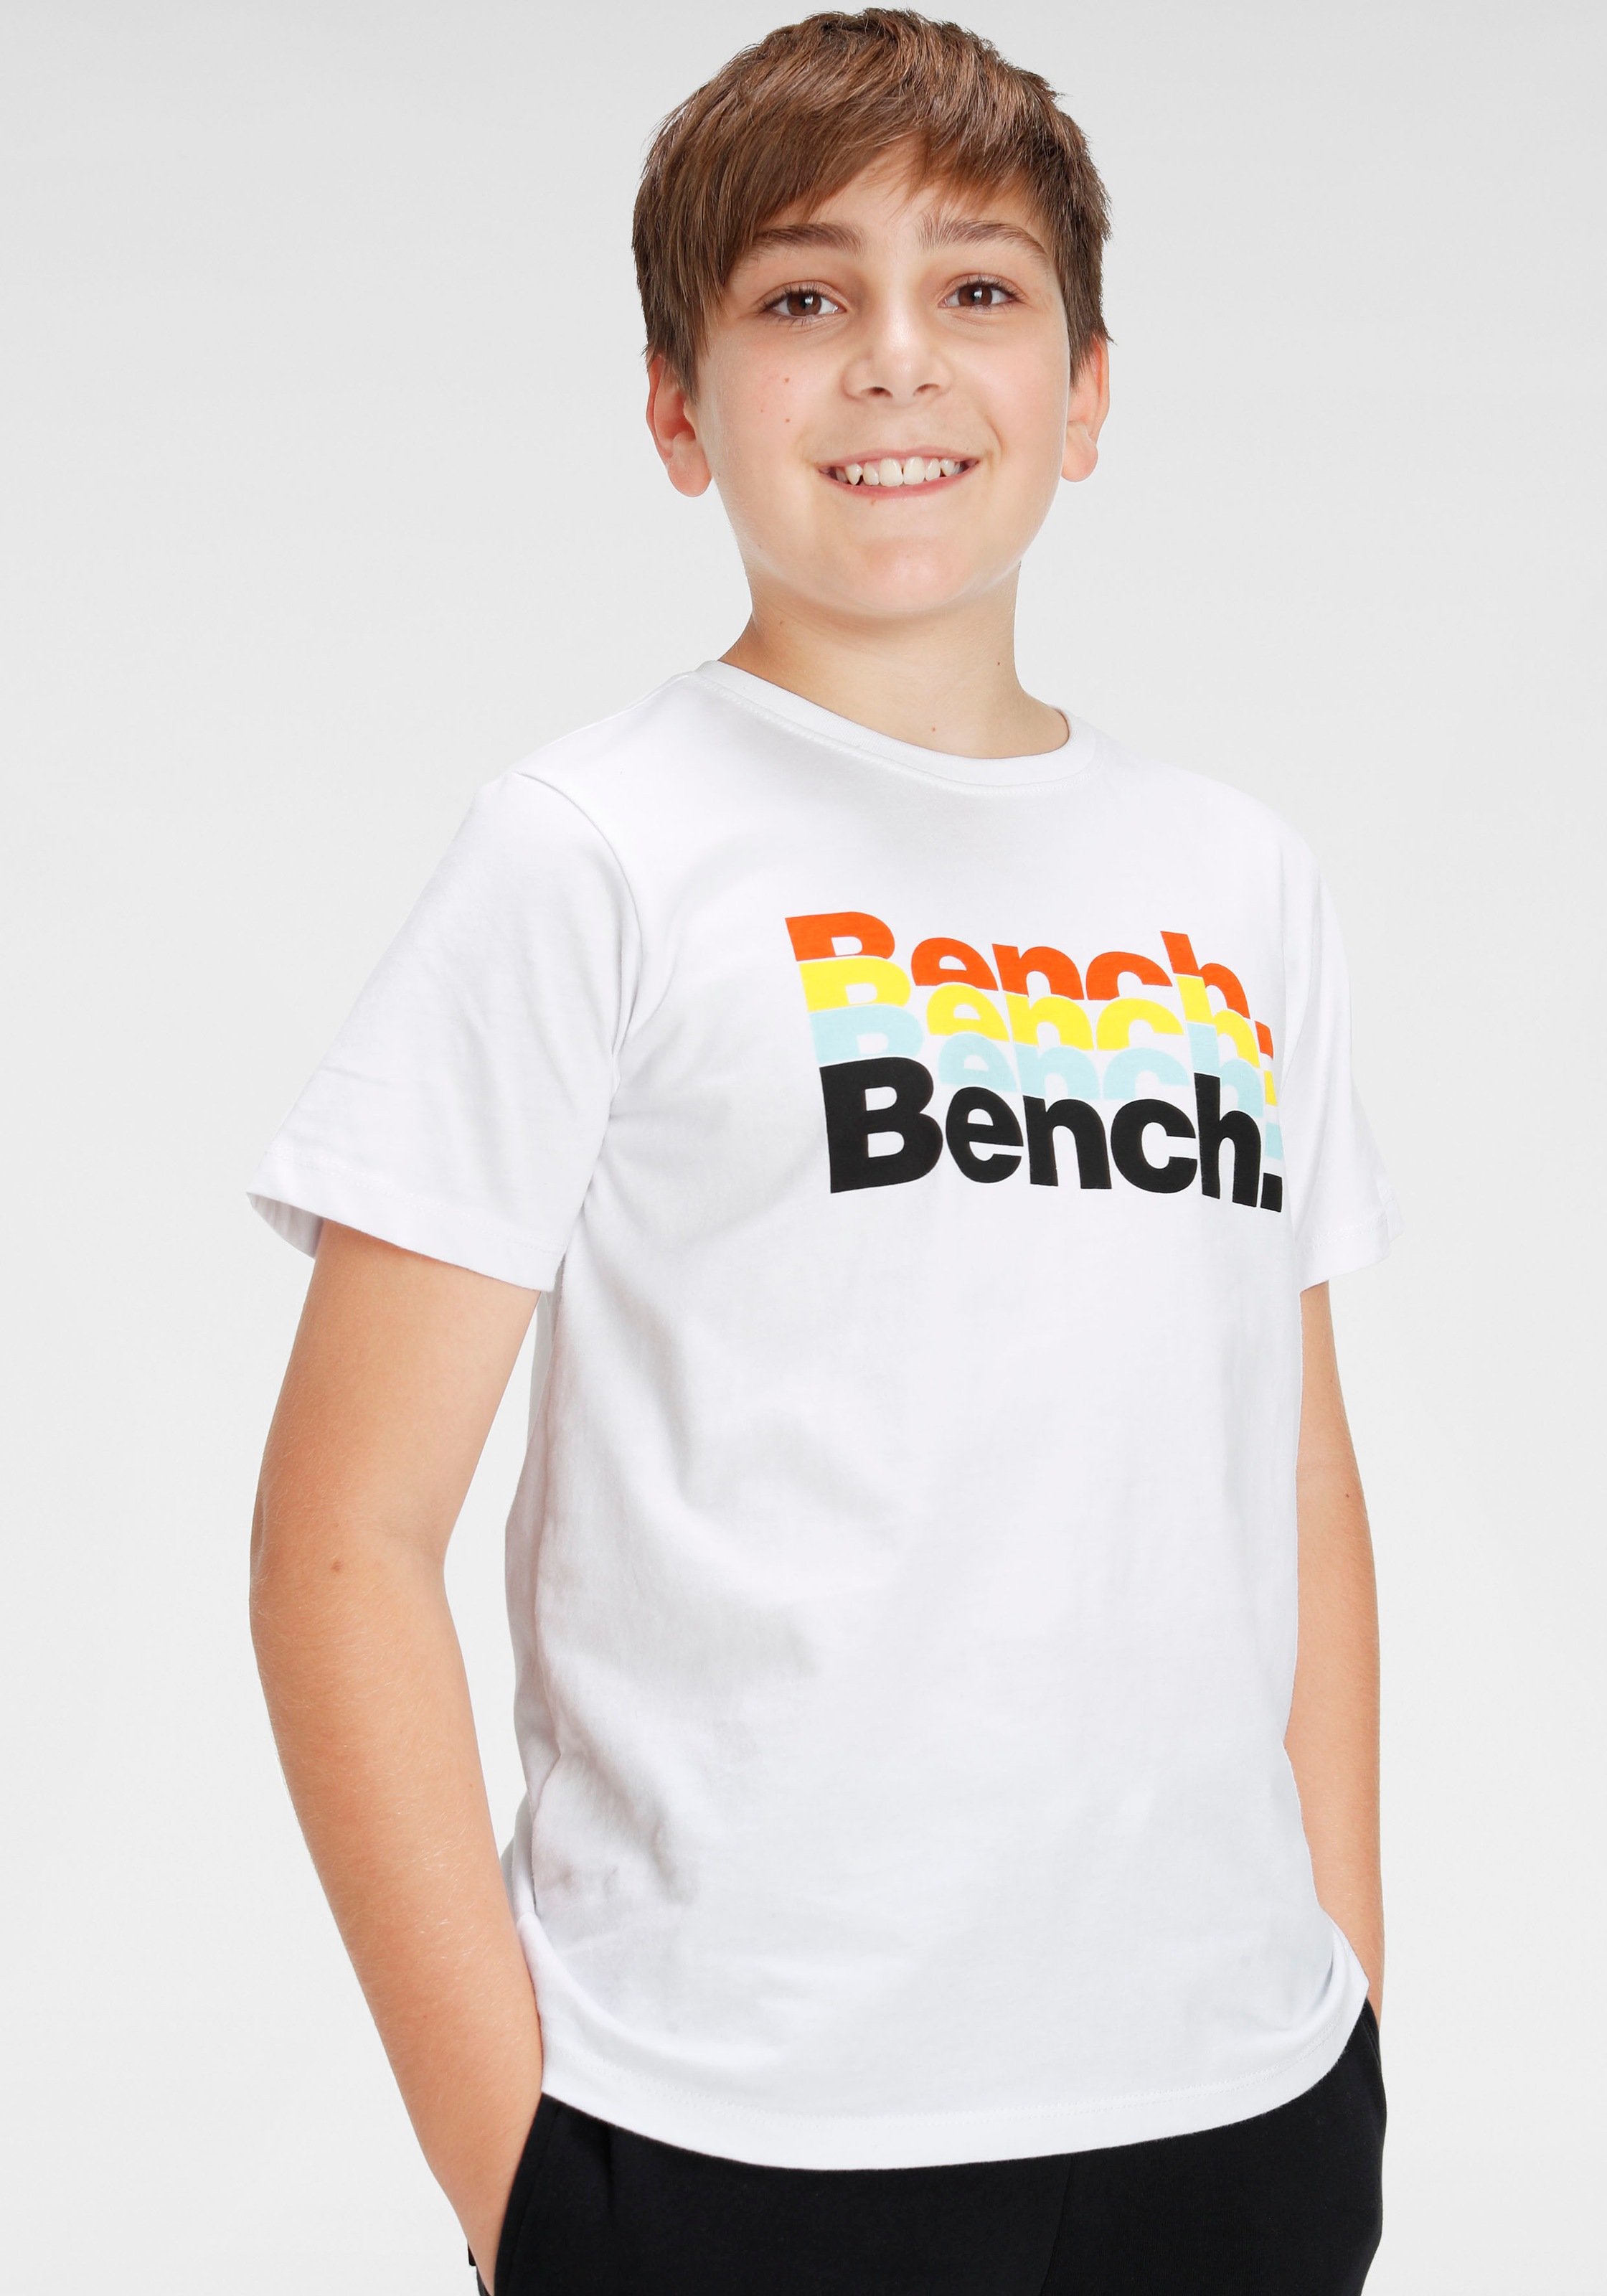 Bench. T-Shirt & Bermudas, (Set, 2 tlg.) sans frais de livraison sur